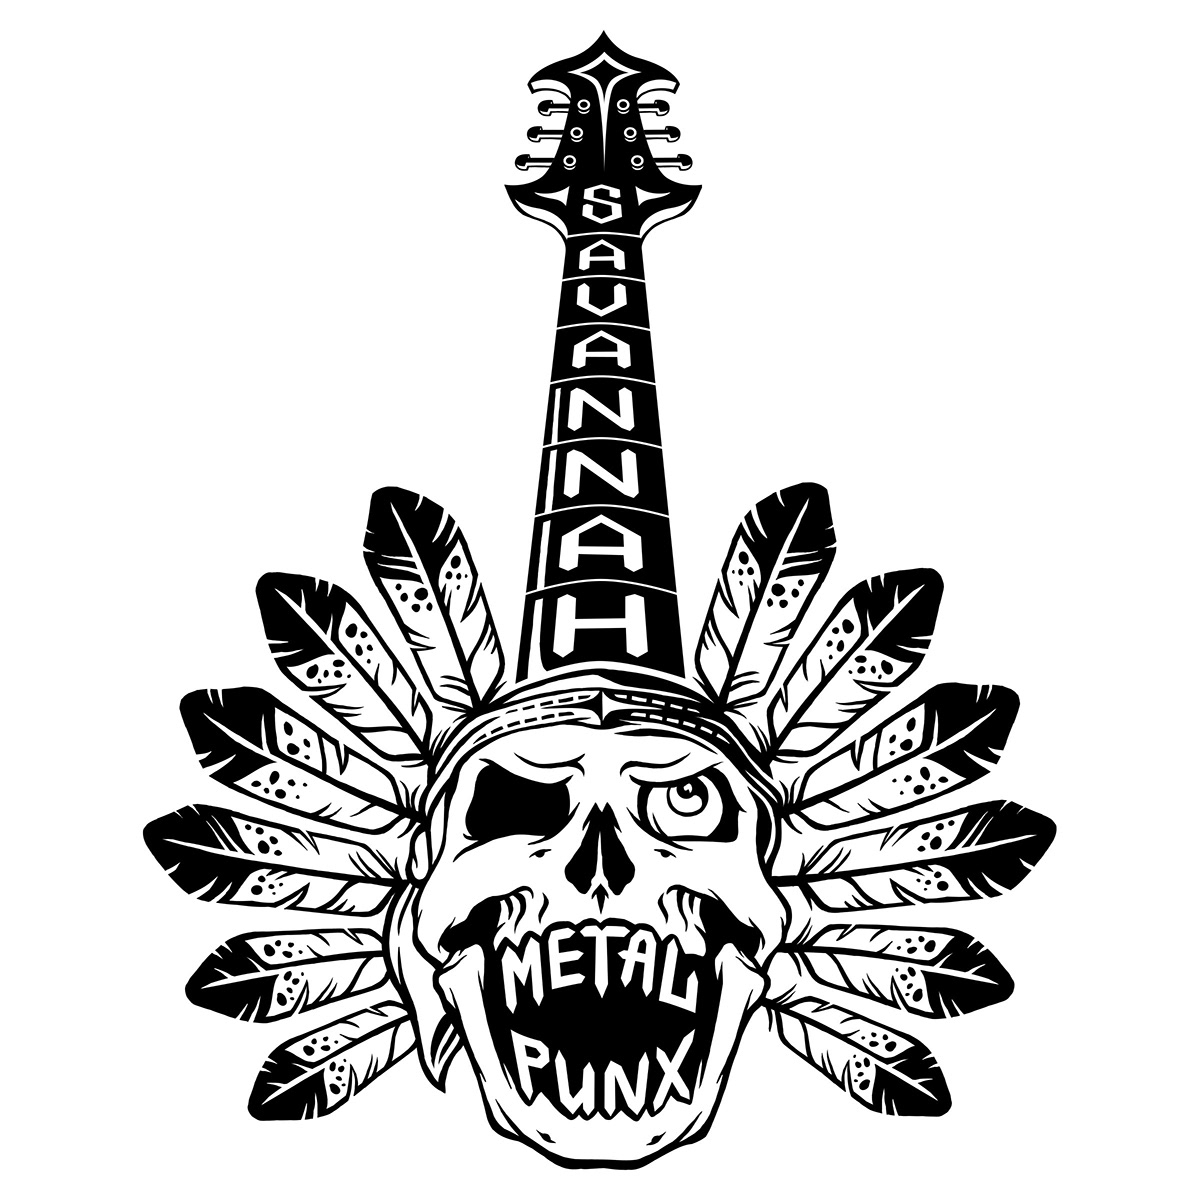 Savannah Metal Punx logos